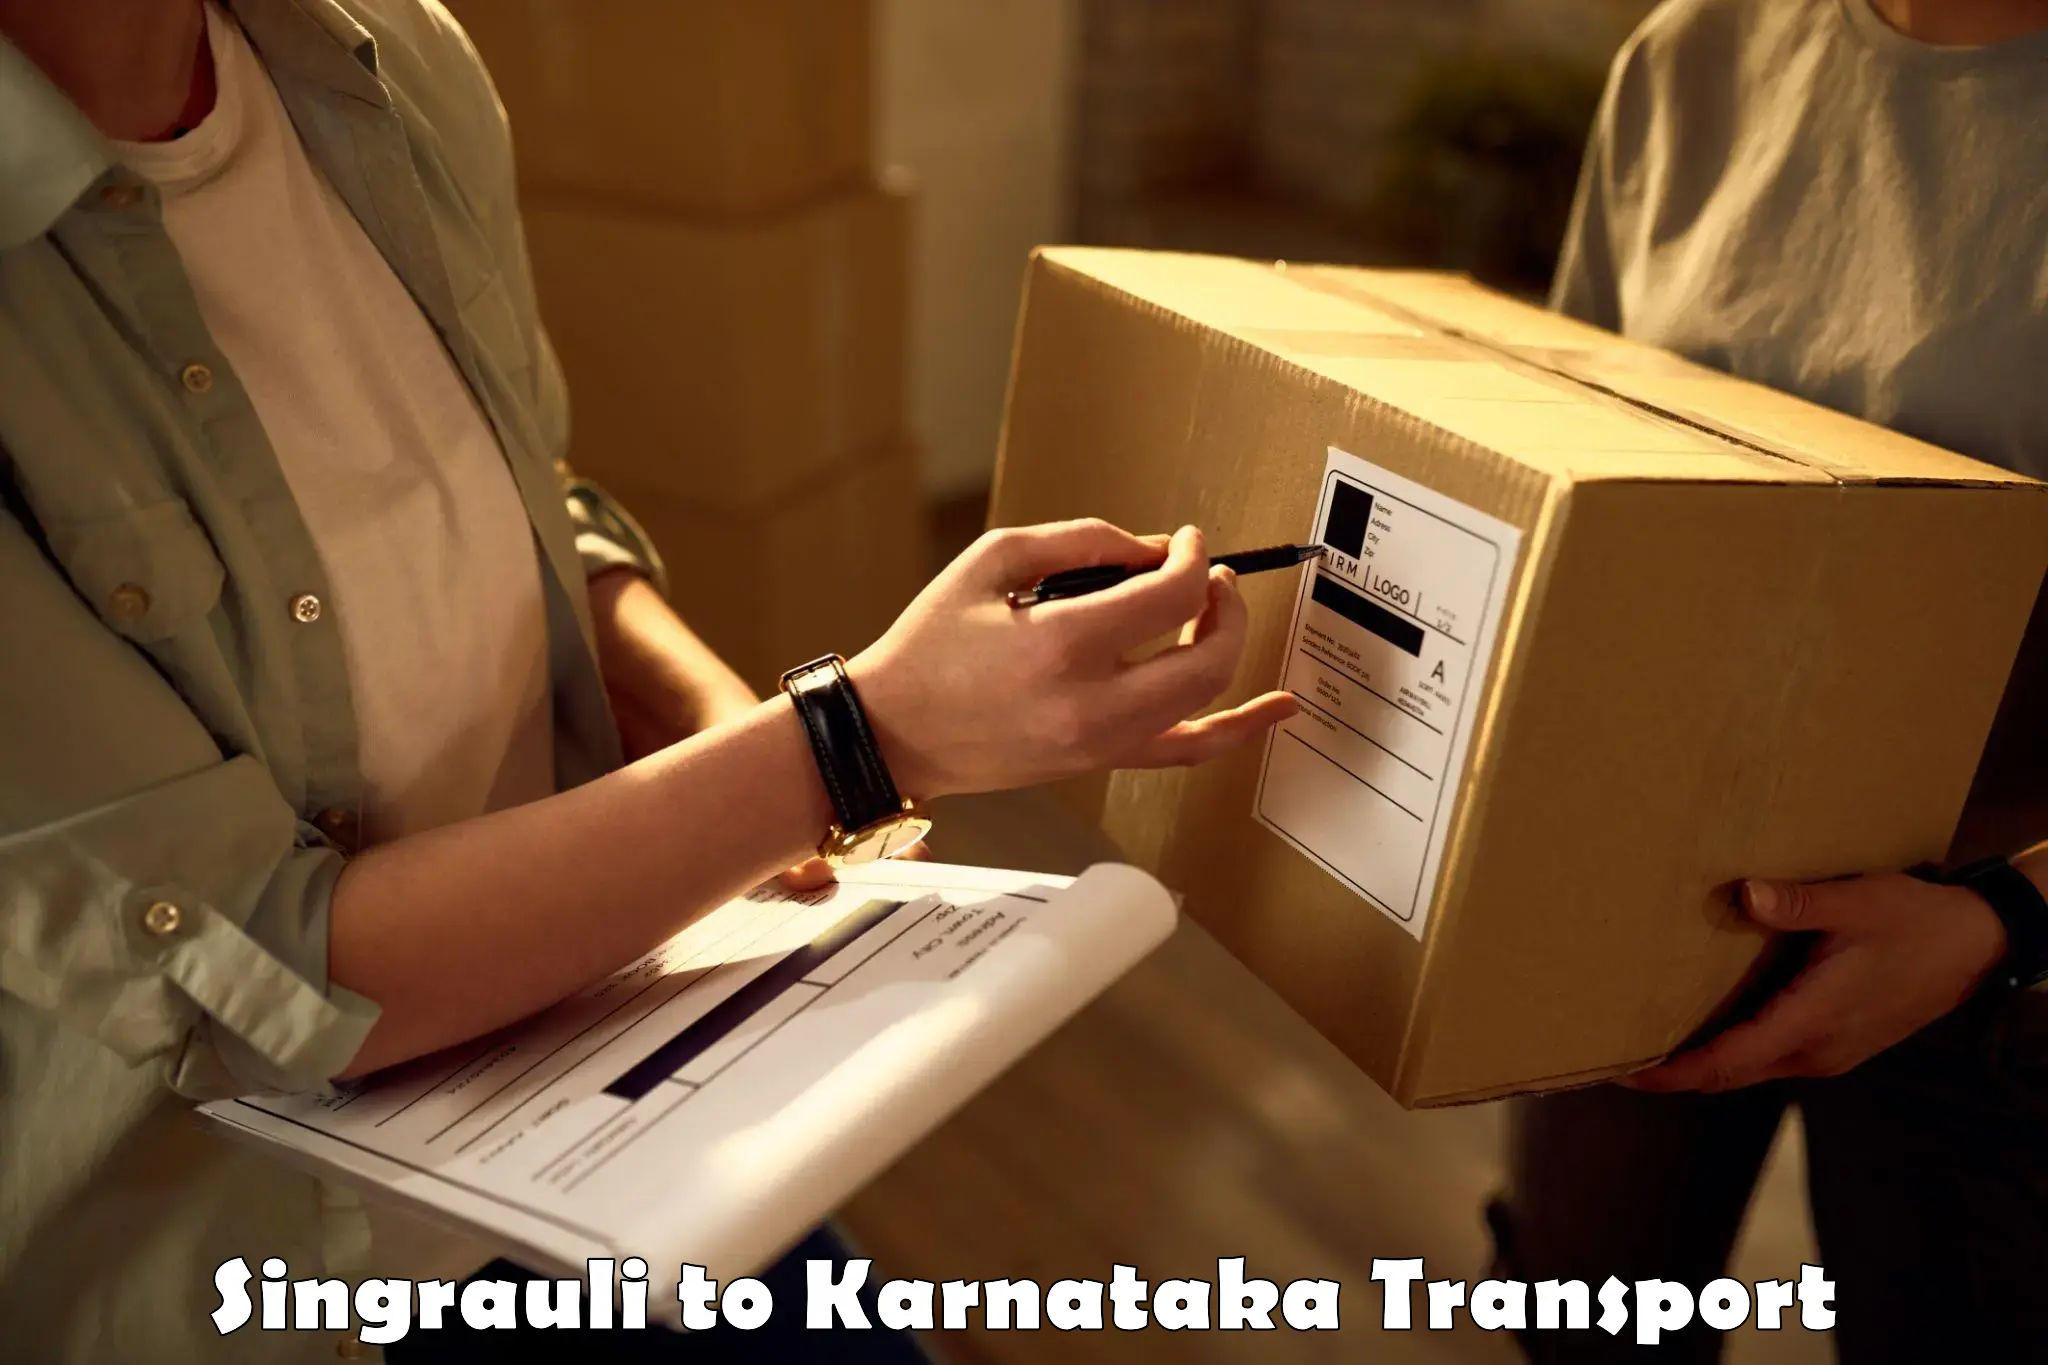 Vehicle parcel service Singrauli to Bethamangala